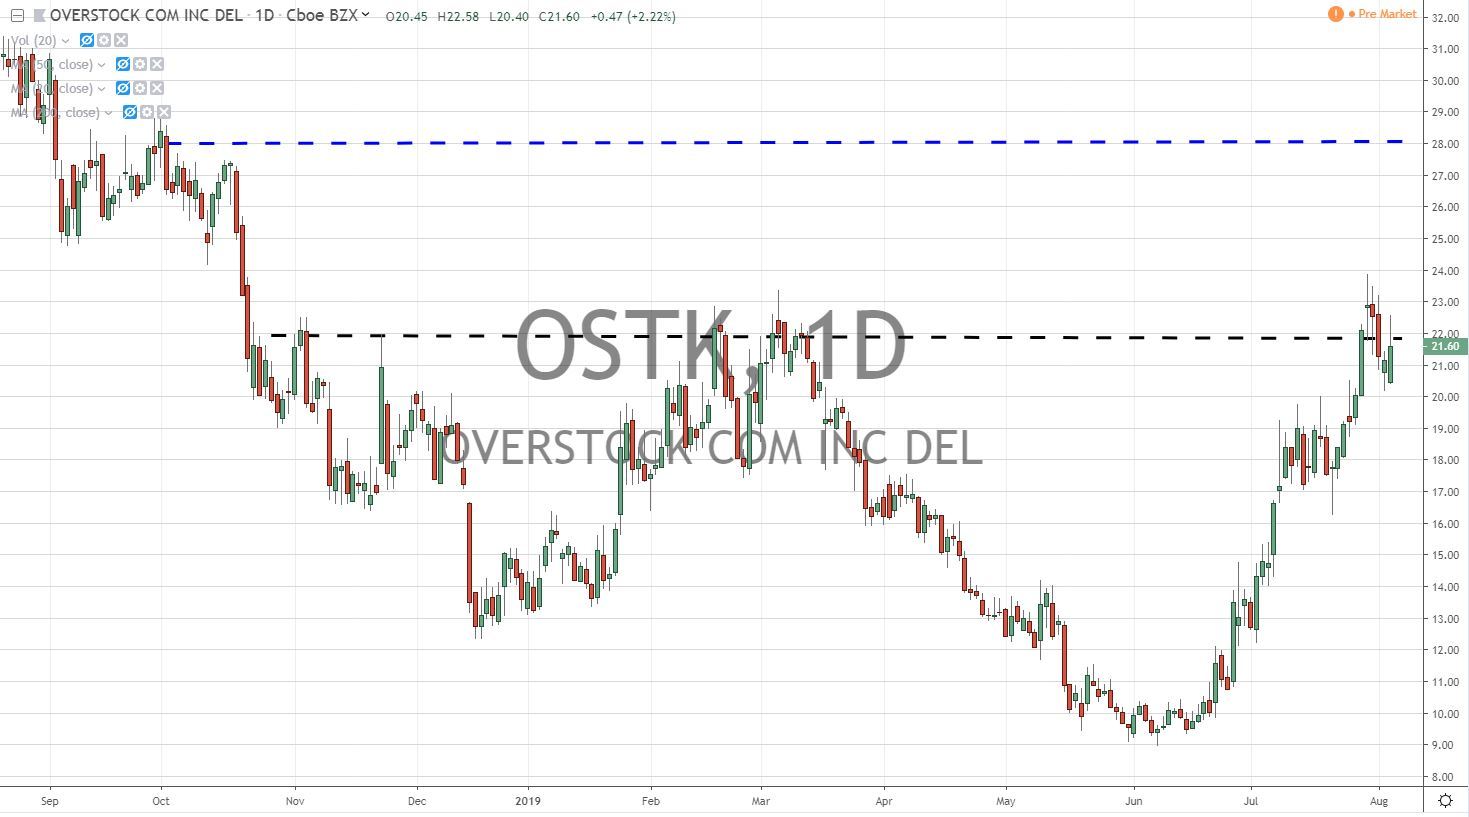 Overstock OSTK Stock Chart 8.6.19